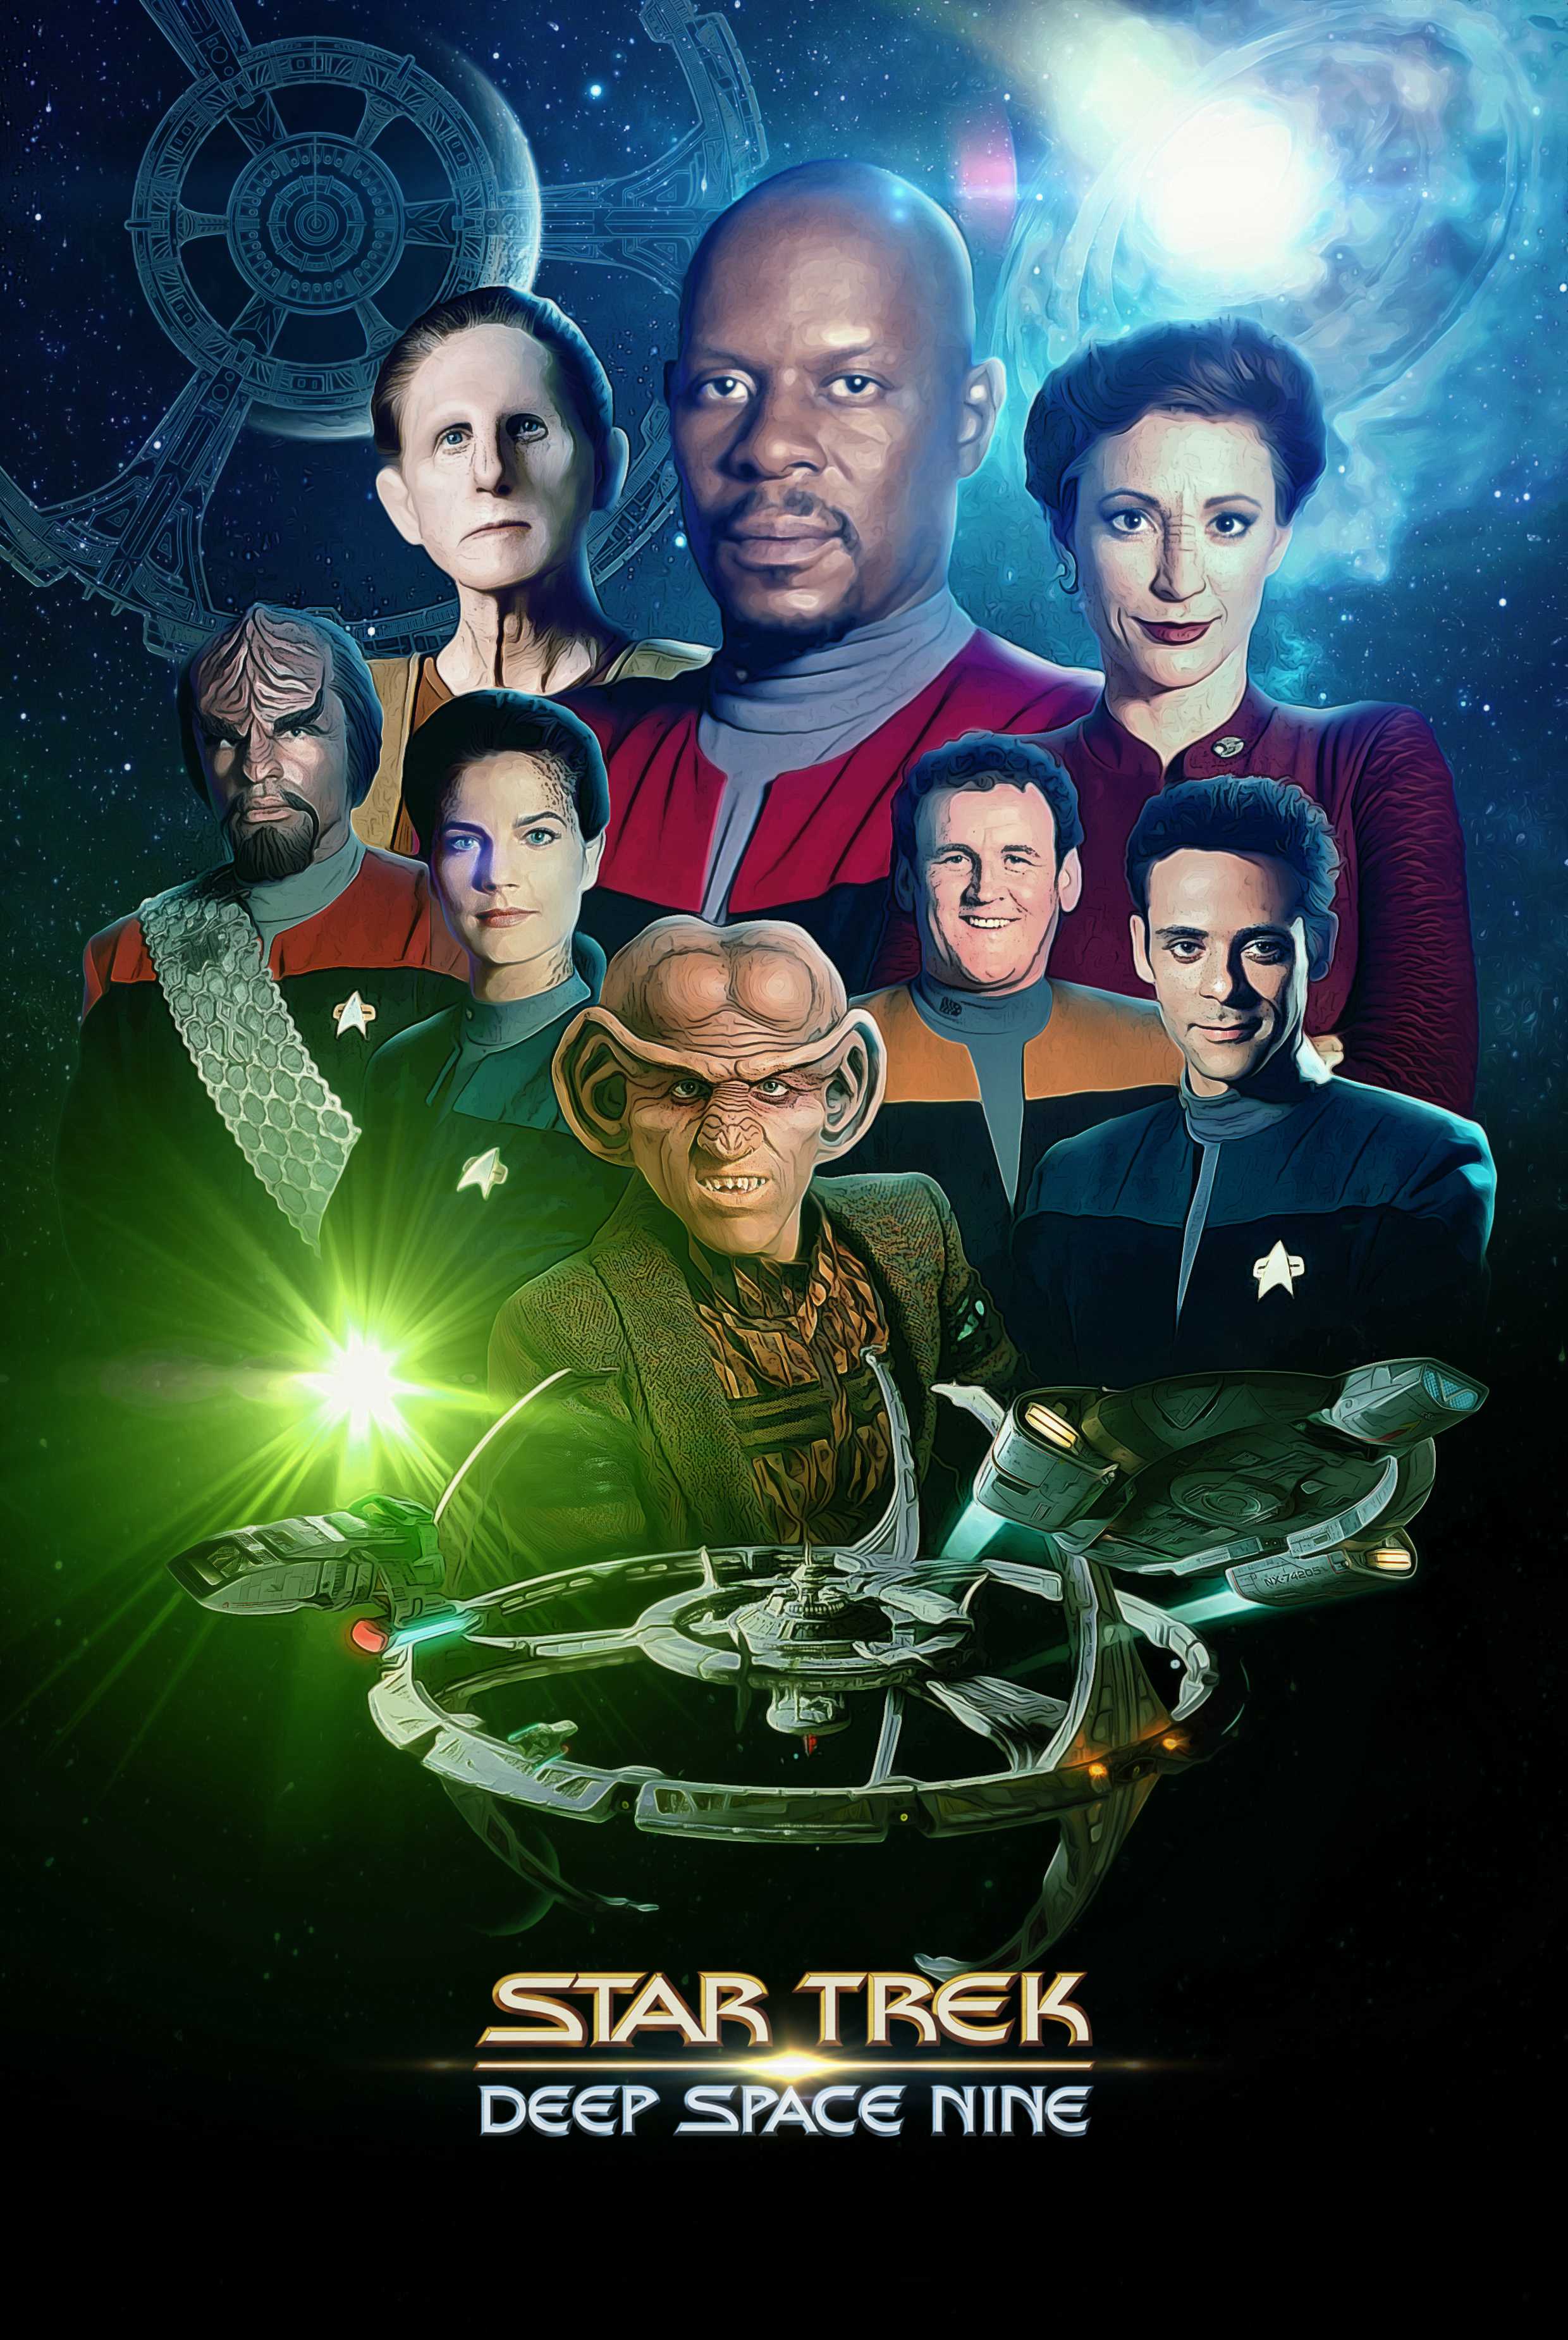 Star Trek: Deep Space Nine - Star Trek: Deep Space Nine